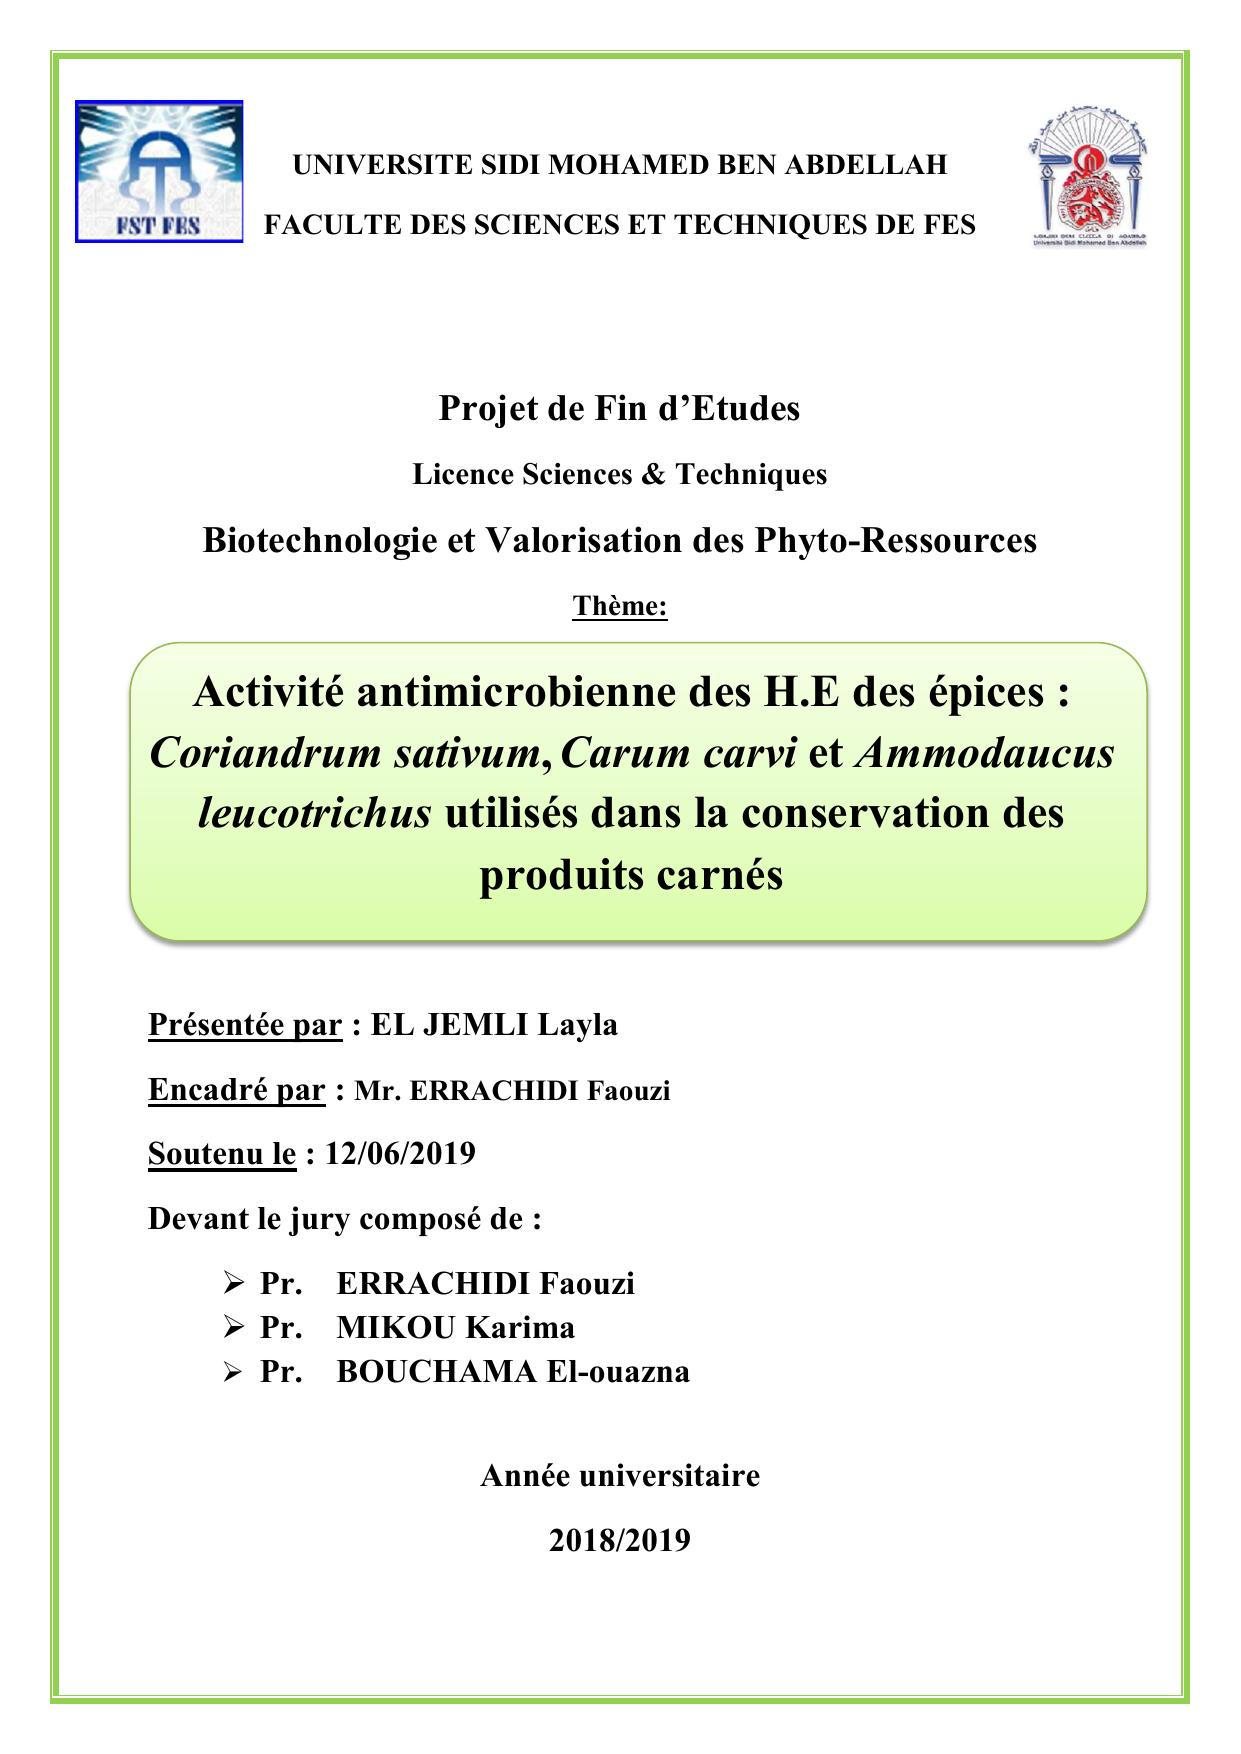 Activité antimicrobienne des H.E des épices : Coriandrum sativum, Carum carvi et Ammodaucus leucotrichus utilisés dans la conservation des produits carnés